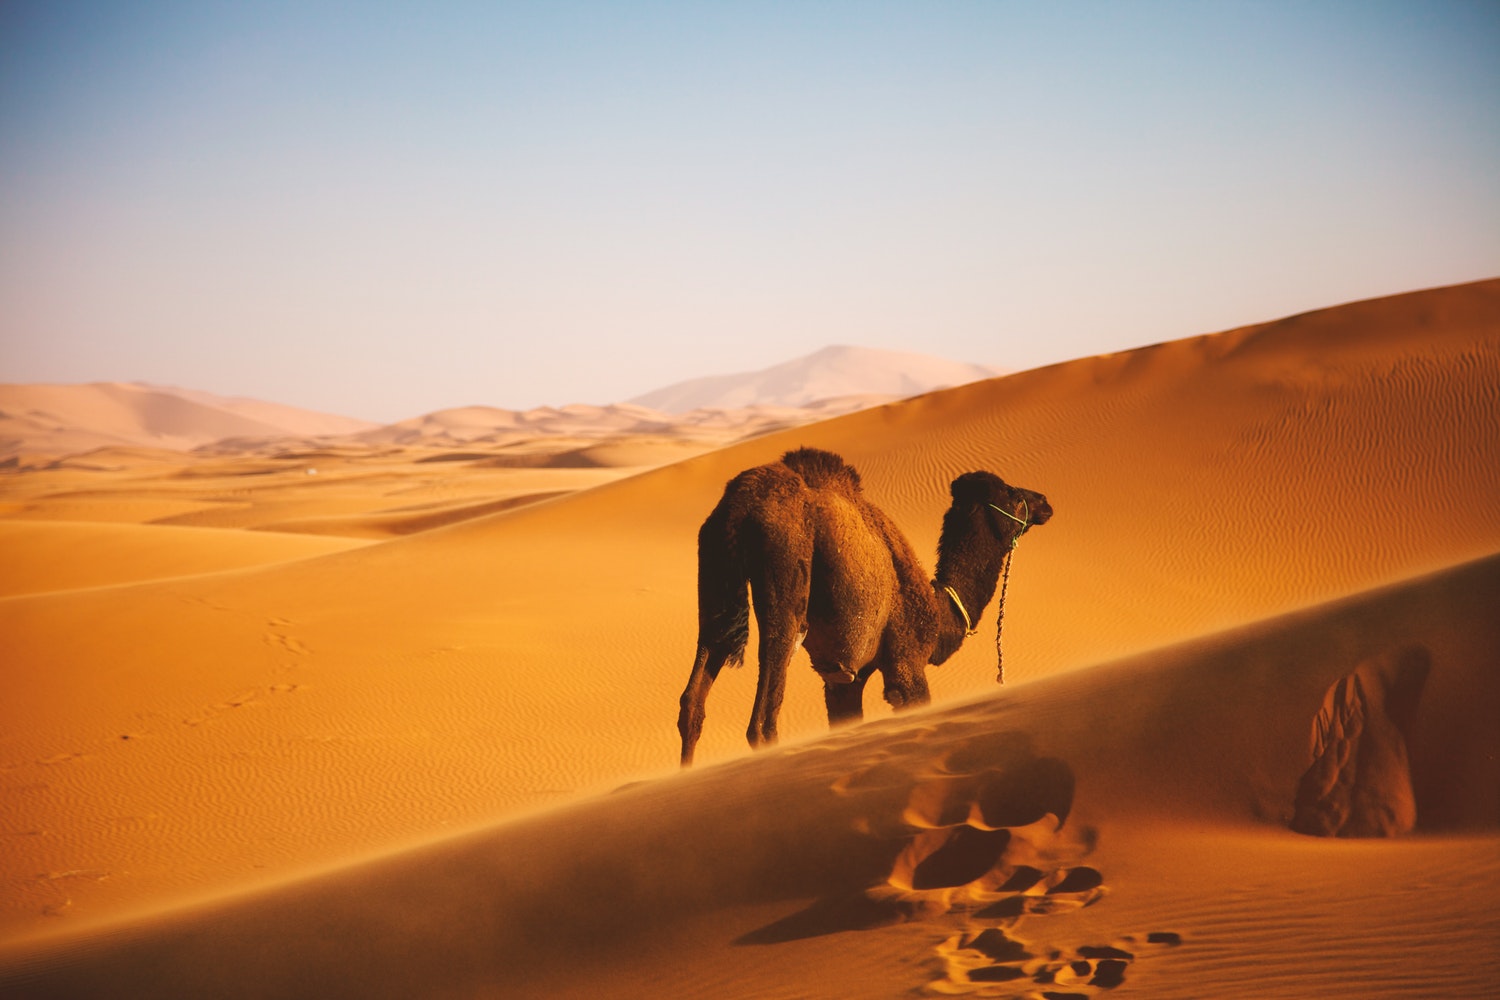 photo 1518978288375 f36cefcc992e - Der Sahara-Staub: Wie wirkt er sich auf die iberische Halbinsel aus?